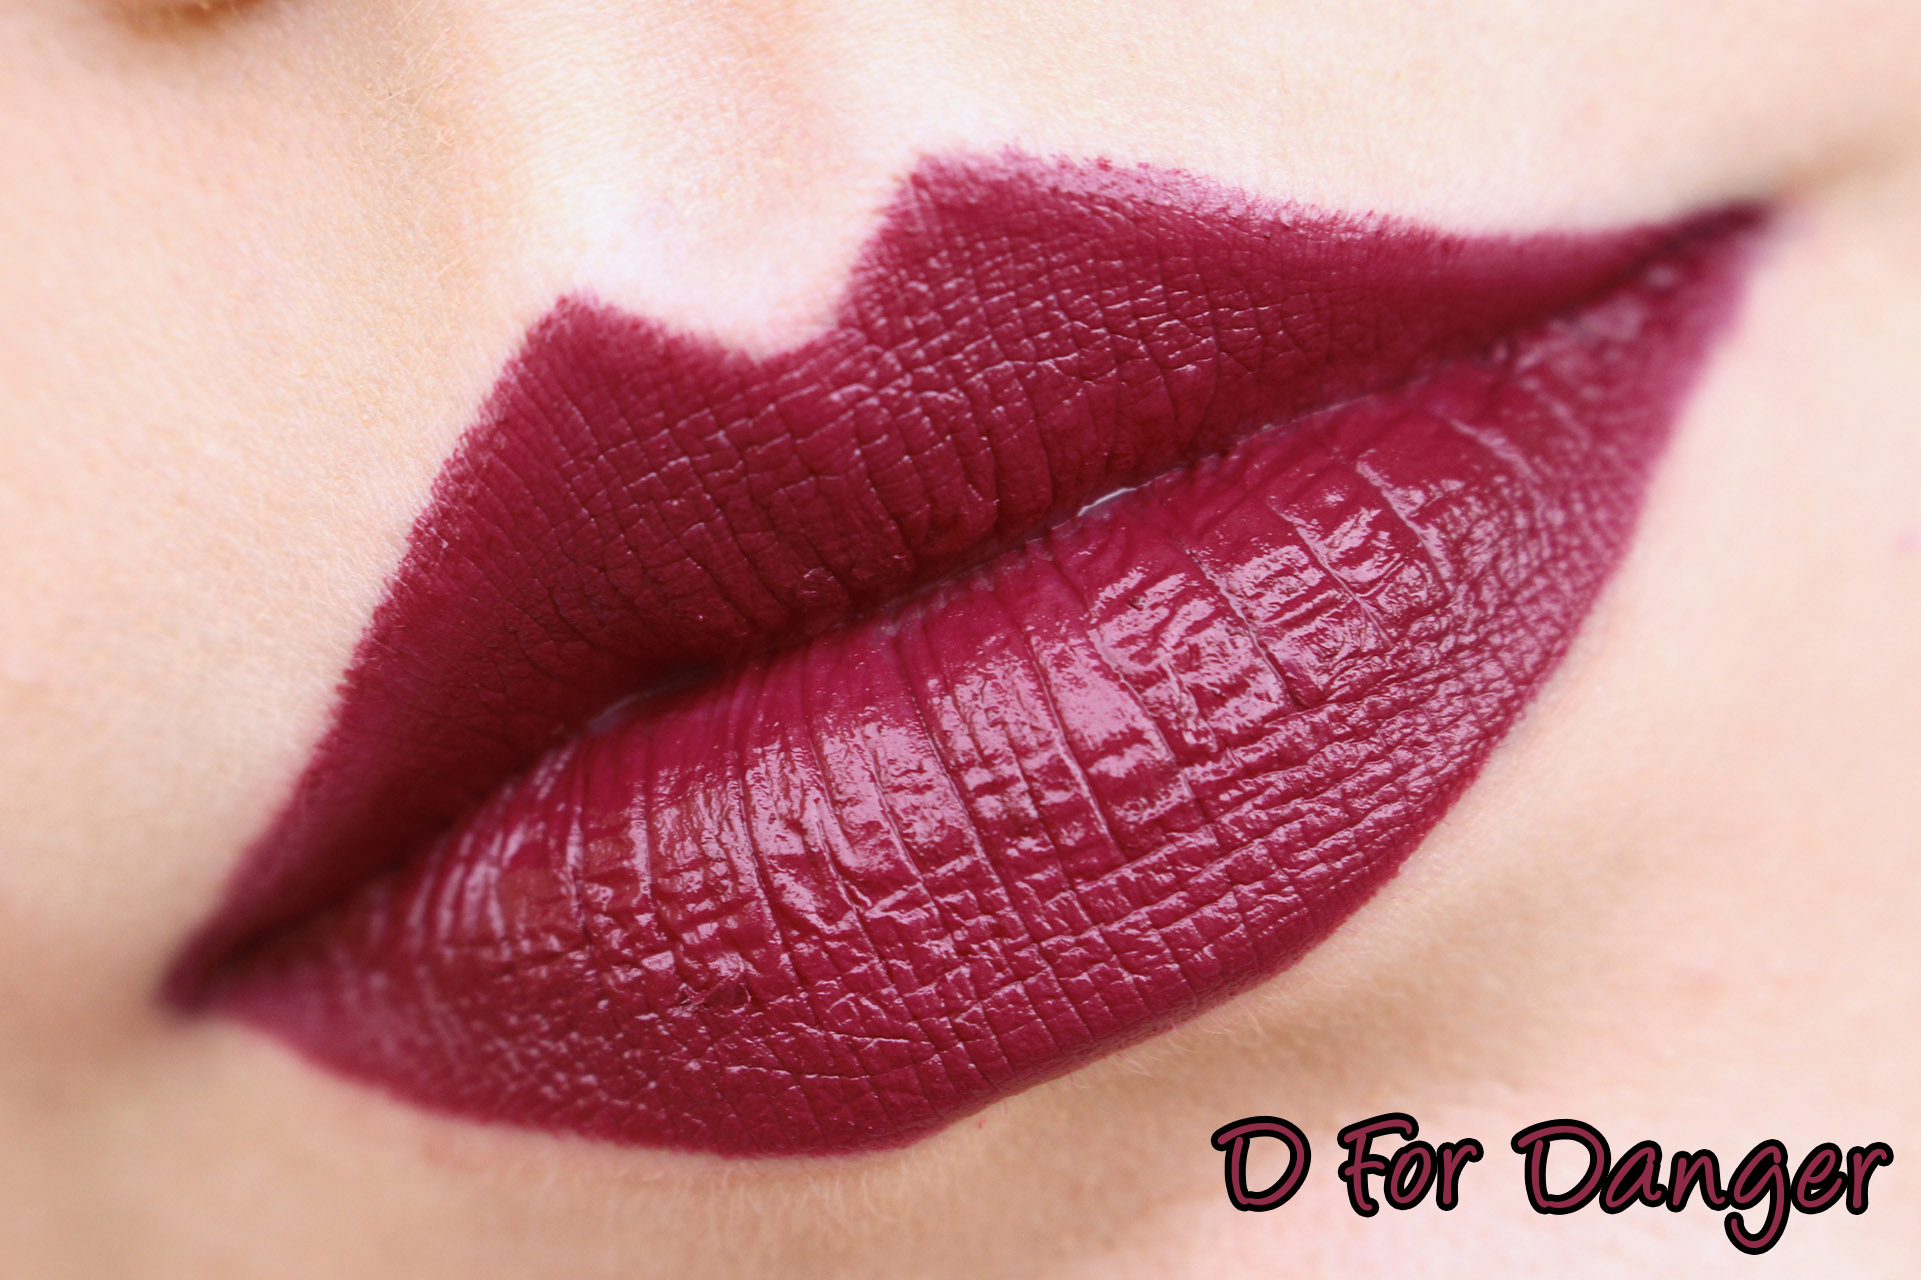 Mac d is for danger matte lipstick